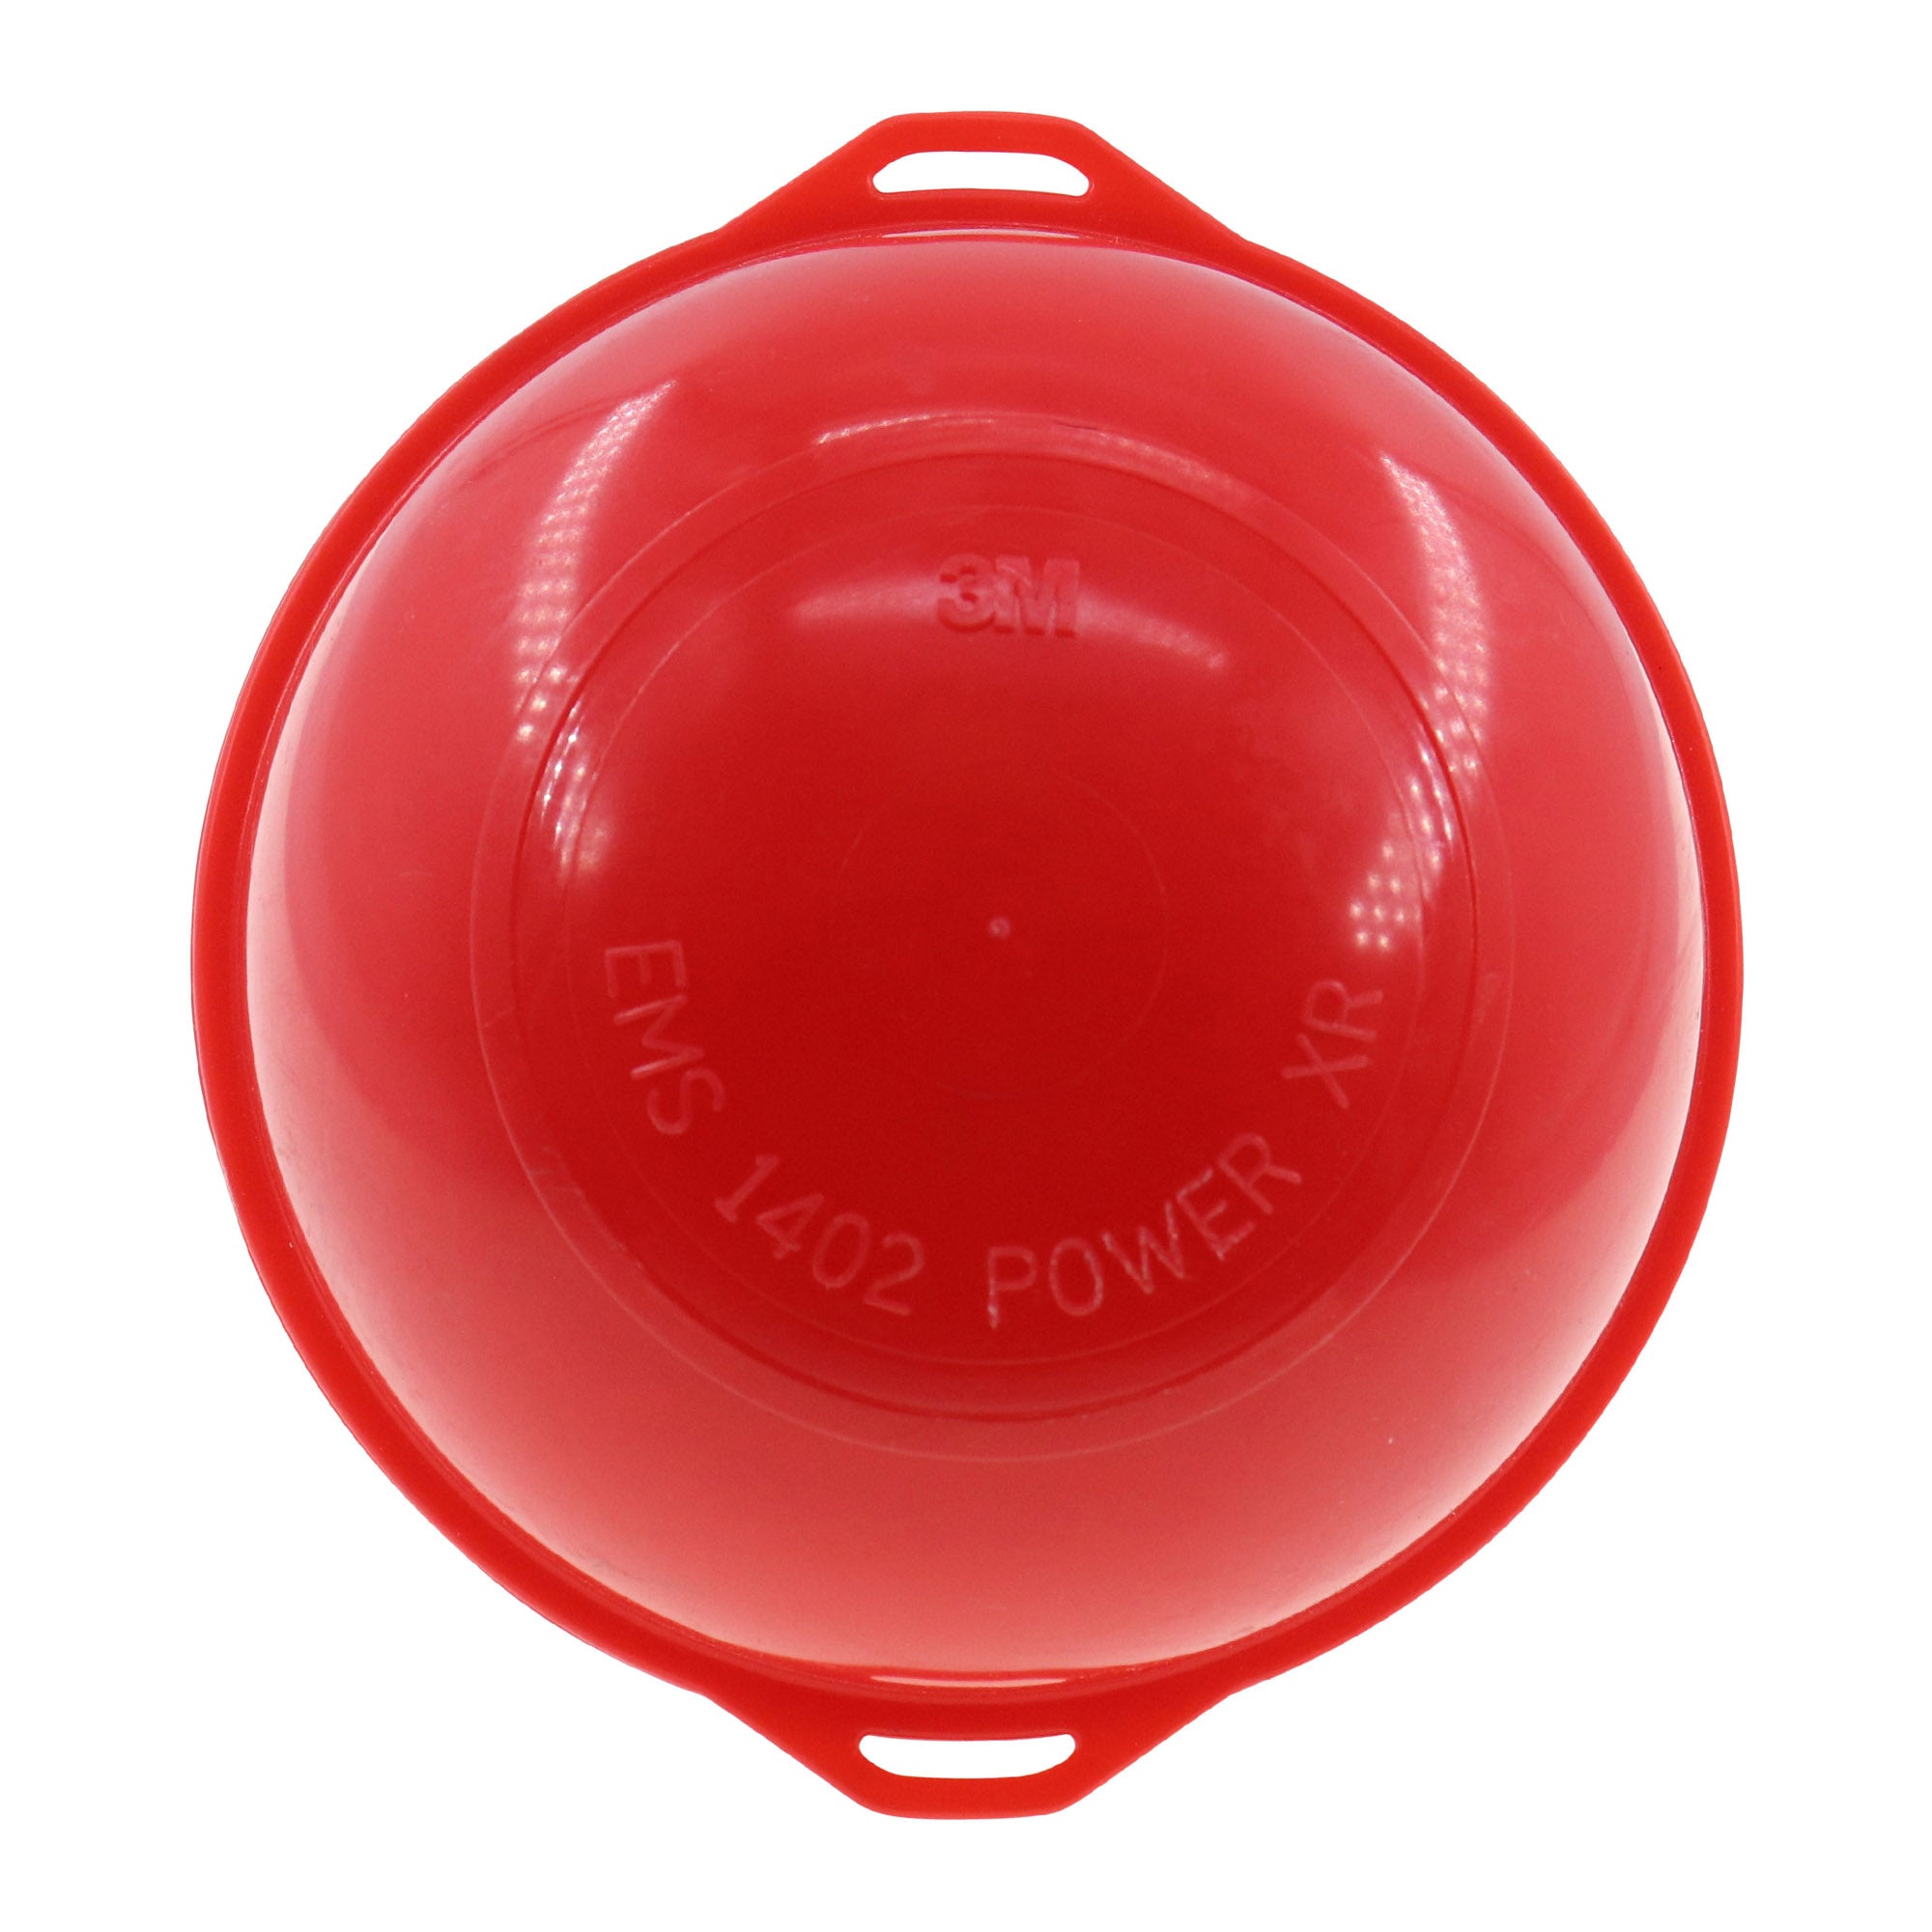 3M, 3M EMS-1402-POWER-XR EXTENDED RANGE POWER BALL MARKER, 6-FEET RANGE, RED